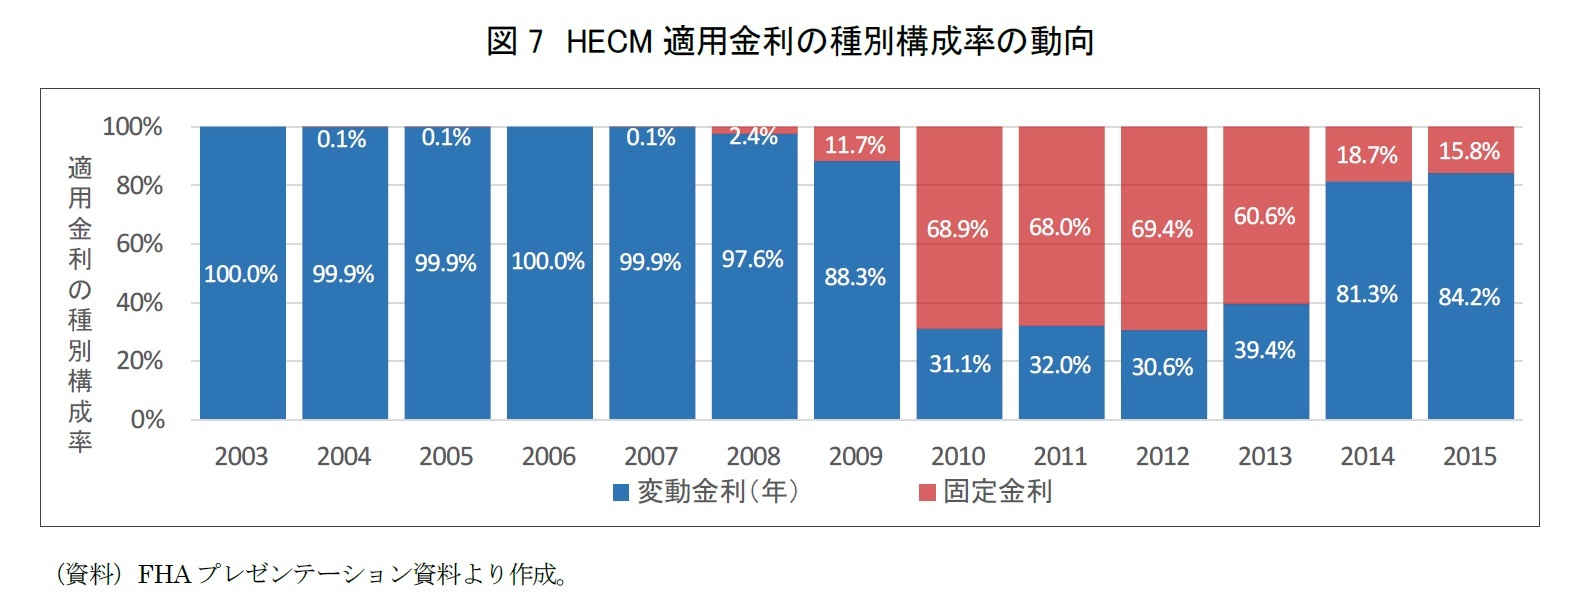 図7　HECM適用金利の種別構成率の動向